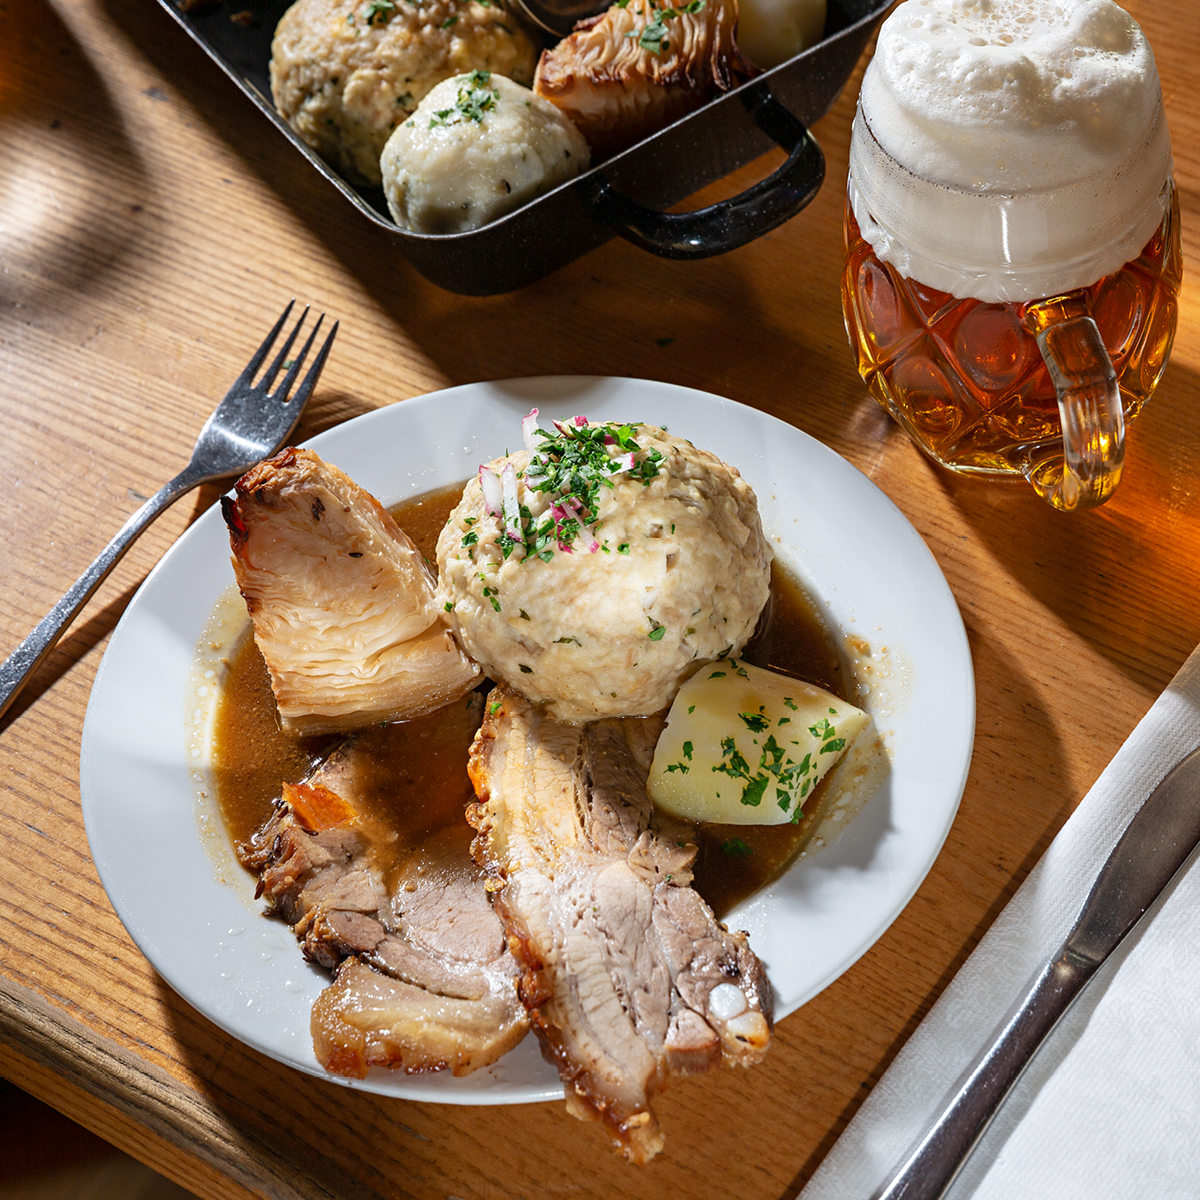 Das Bild zeigt ein köstliches Fleischgericht mit Beilagen und einem Bierglas daneben.